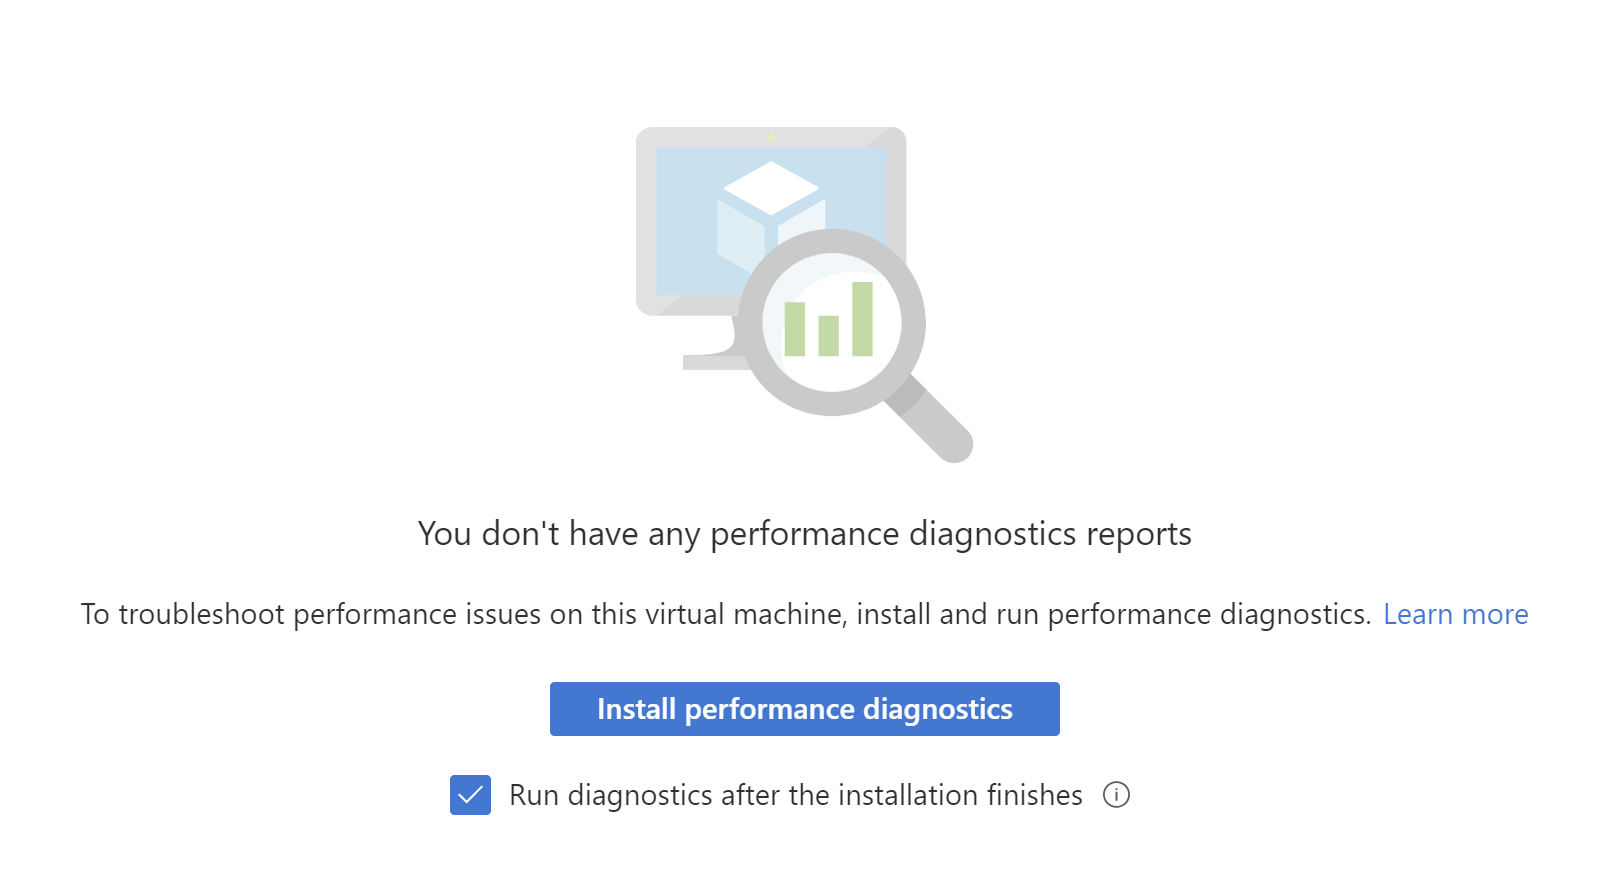 Captura de pantalla del botón de instalación de diagnósticos de rendimiento. La opción Ejecutar diagnósticos después de que finalice la instalación está marcada.